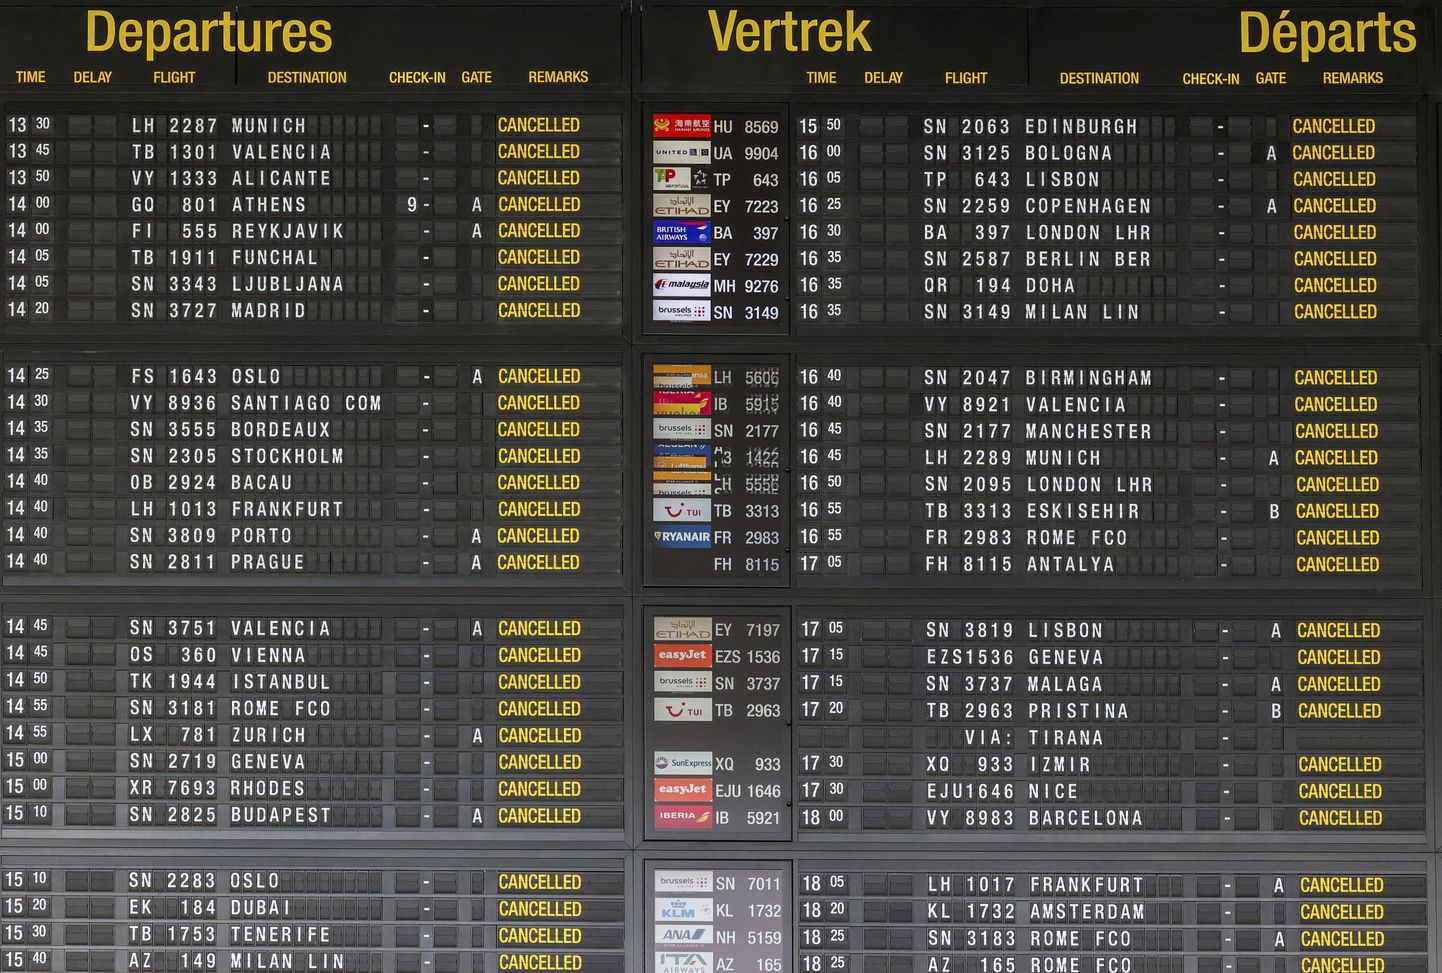 Brüsselis tühistati lennujaama töötajate streigi tõttu 20. juunil sadu lende.